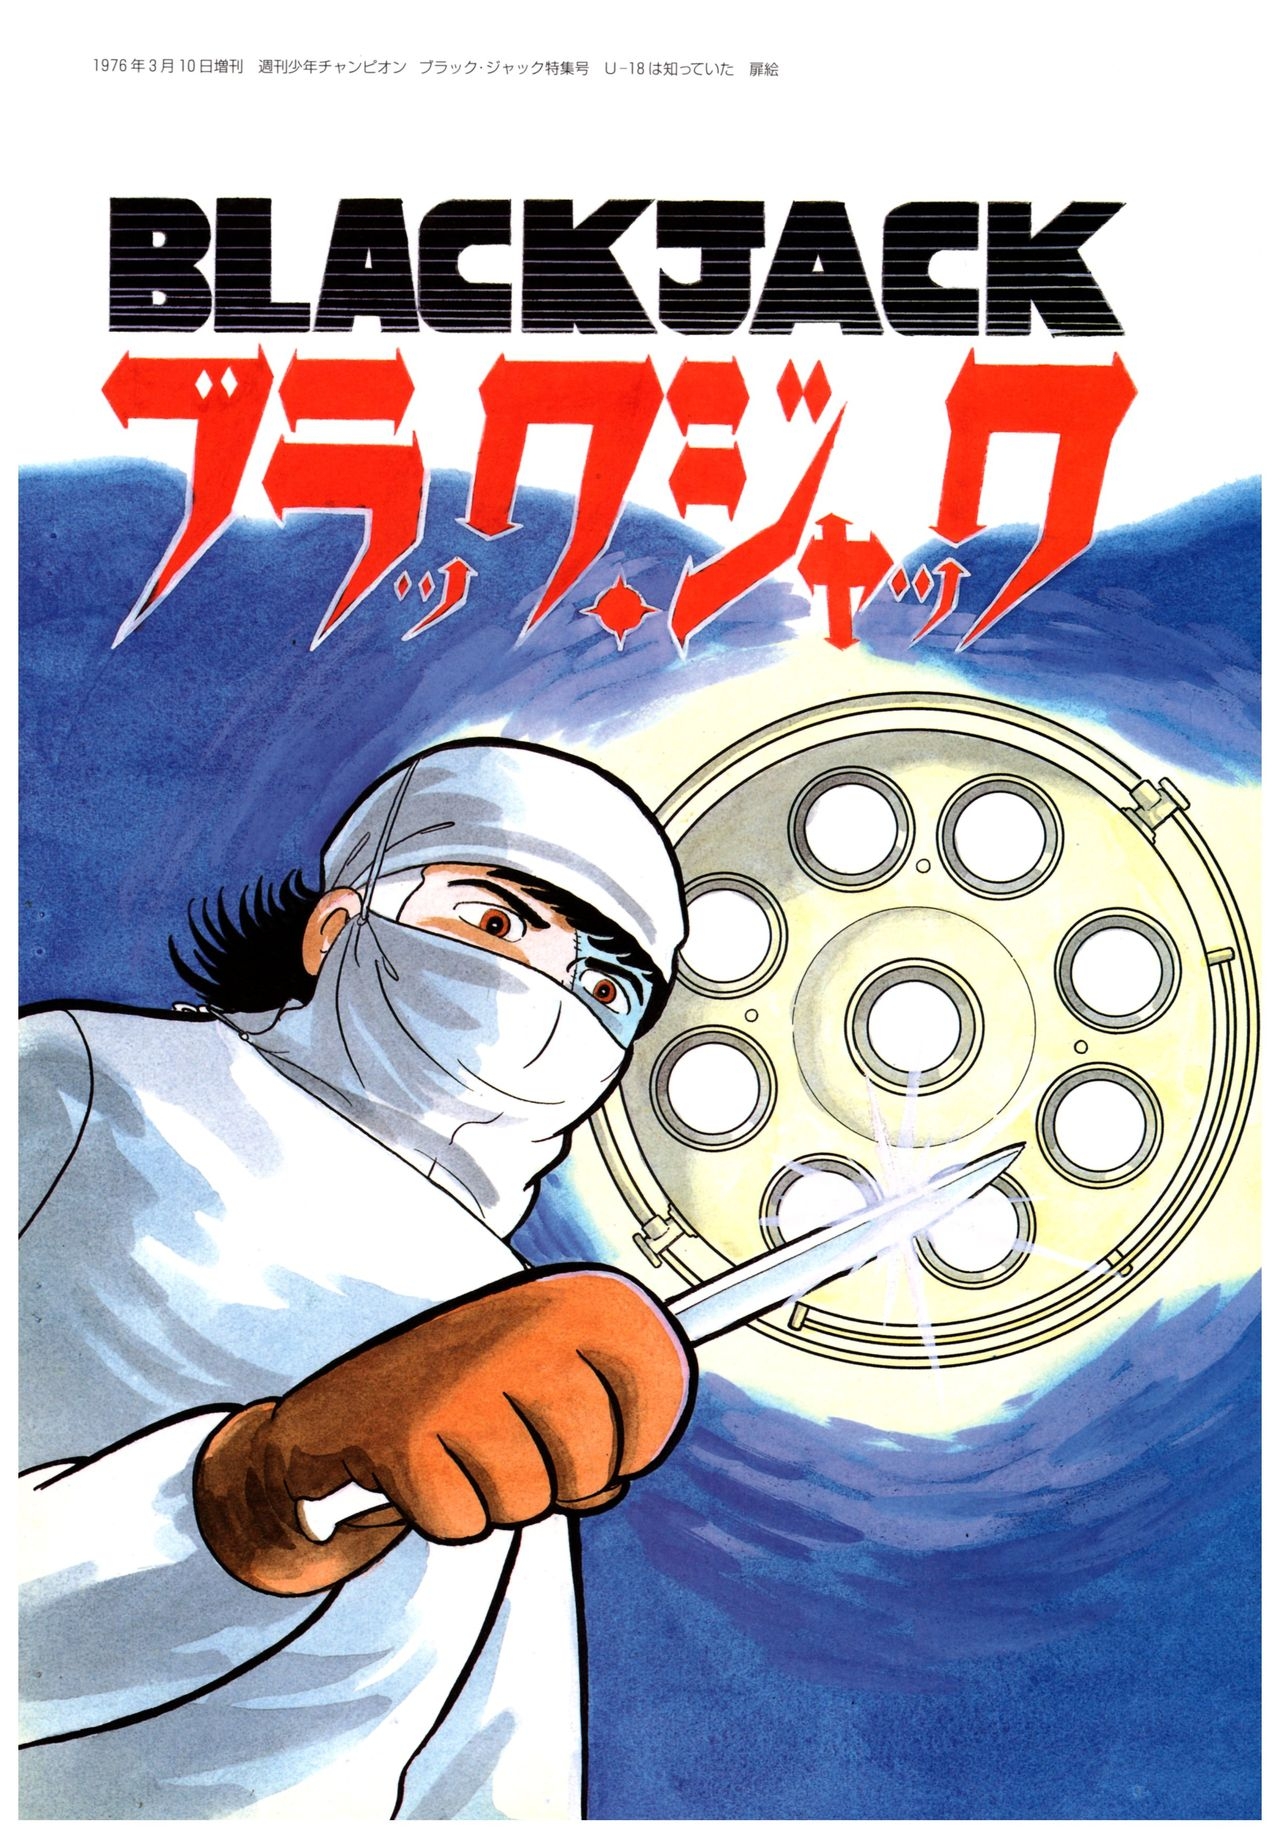 All of Black Jack By Osamu Tezuka 37